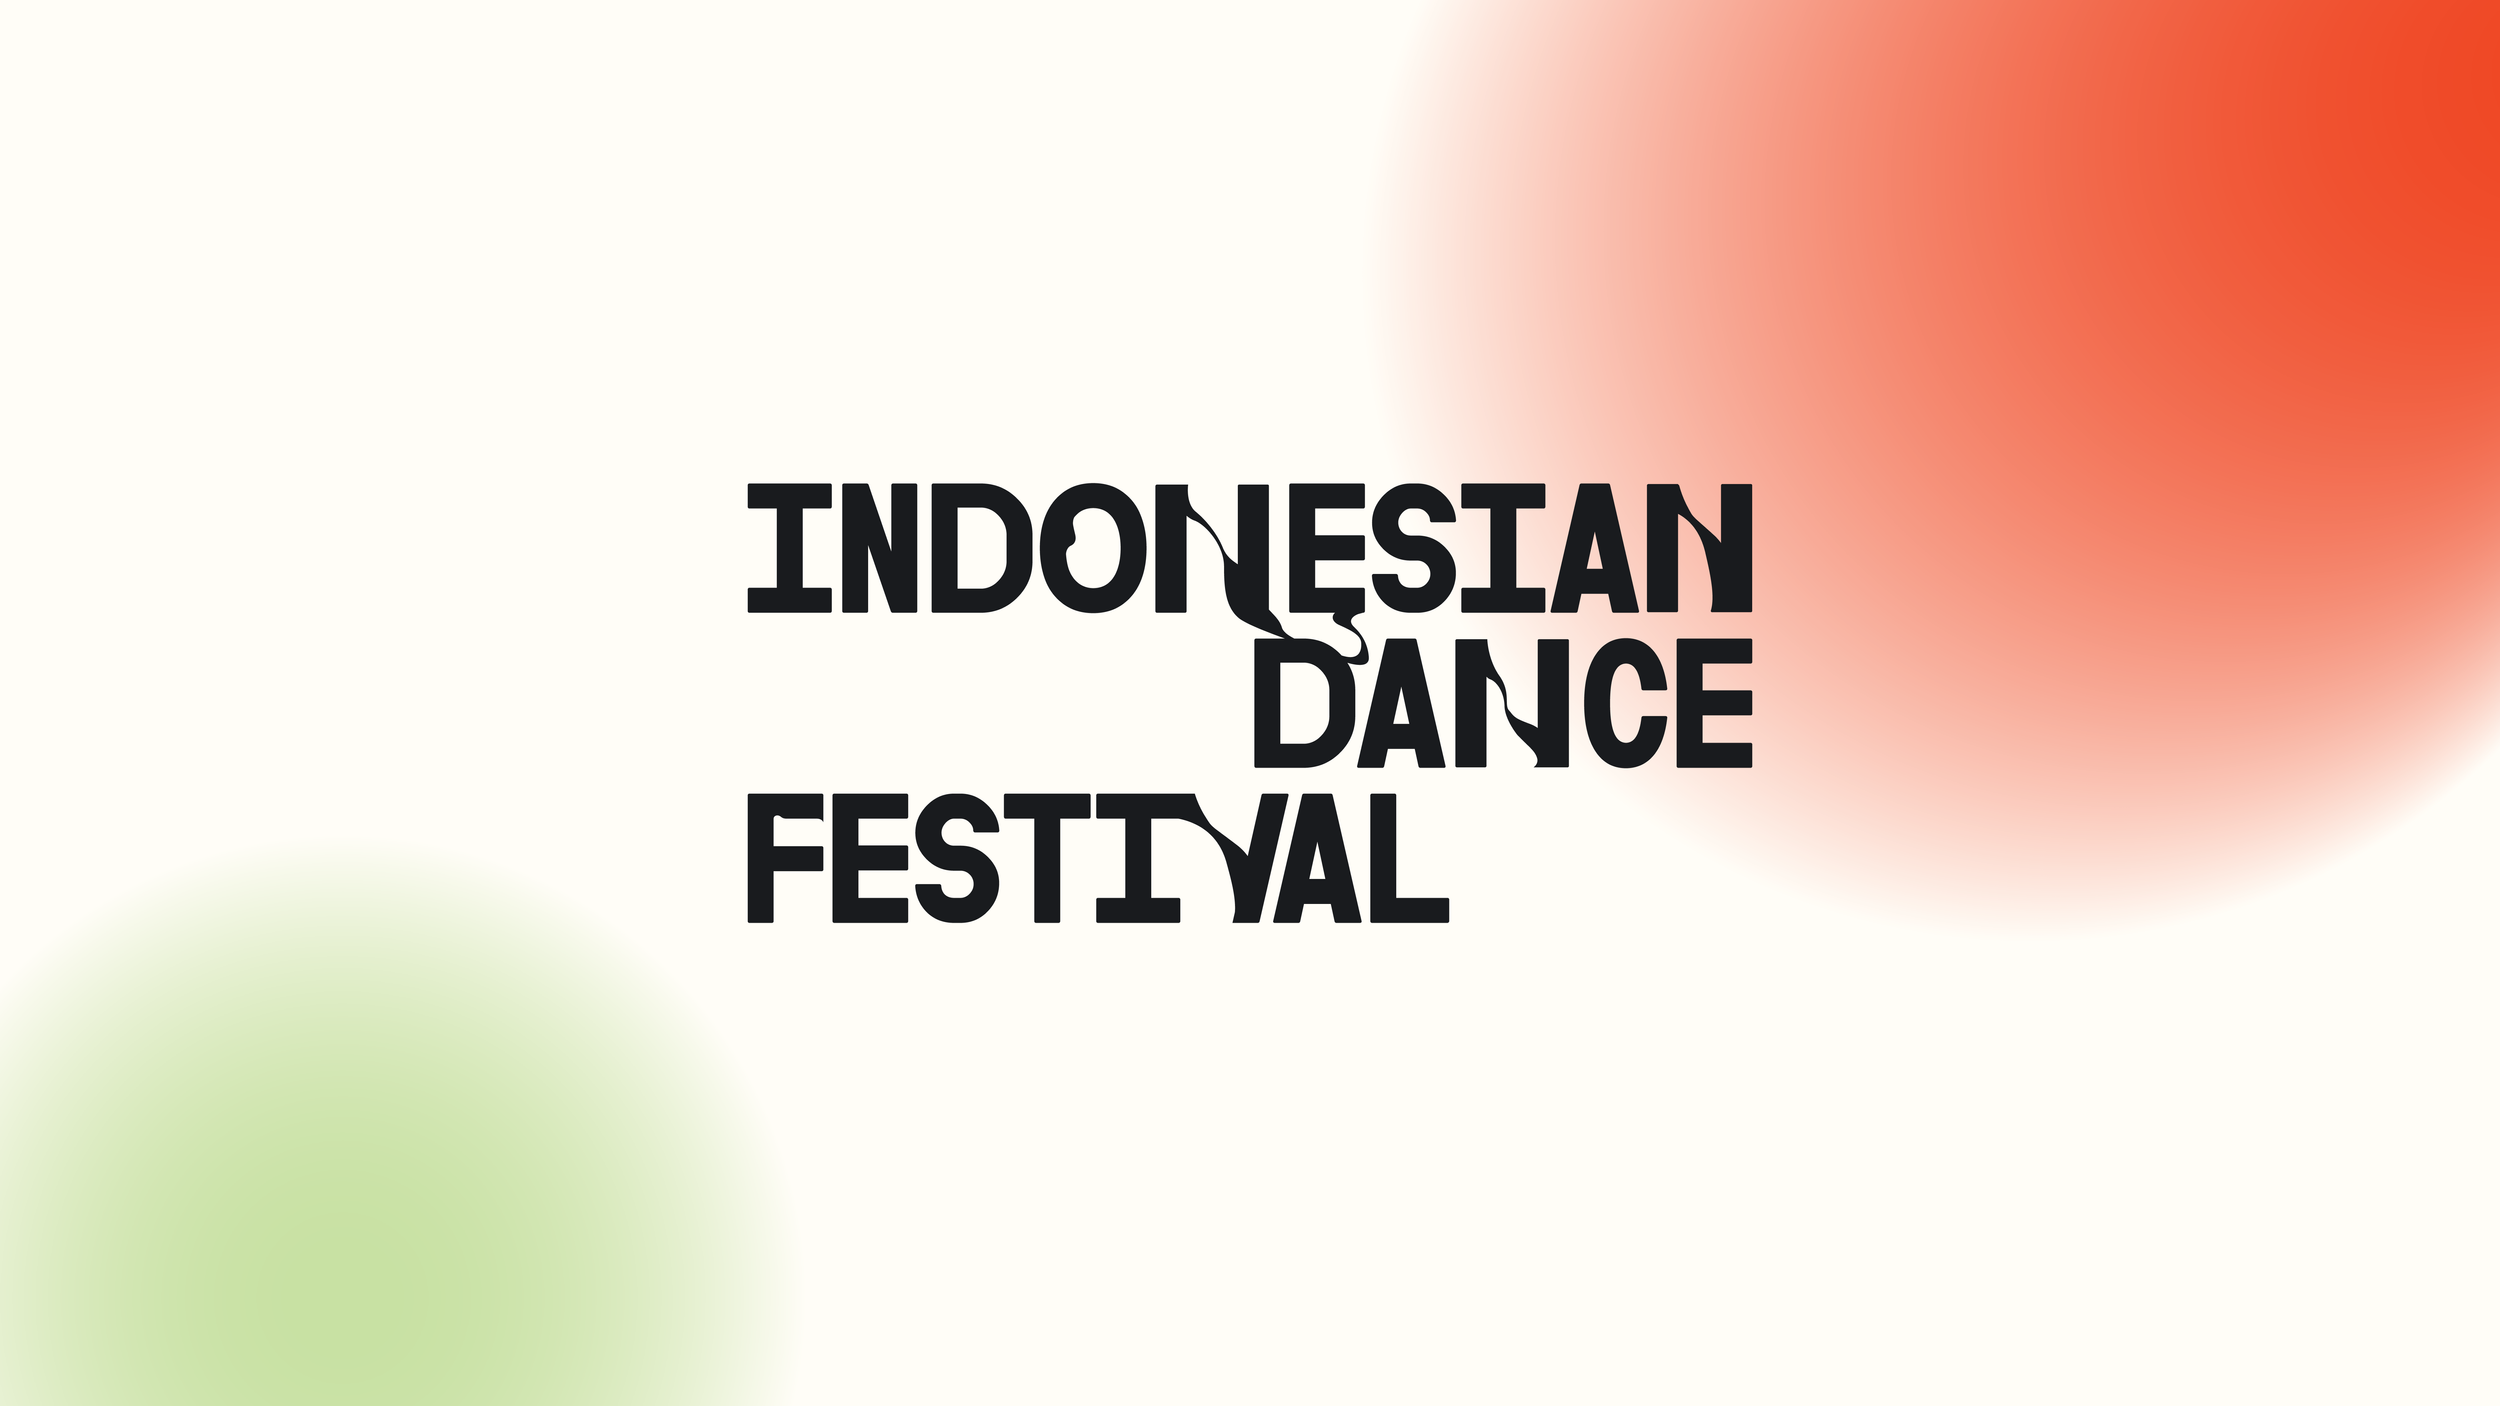 INDONESIAN DANCE FESTIVAL